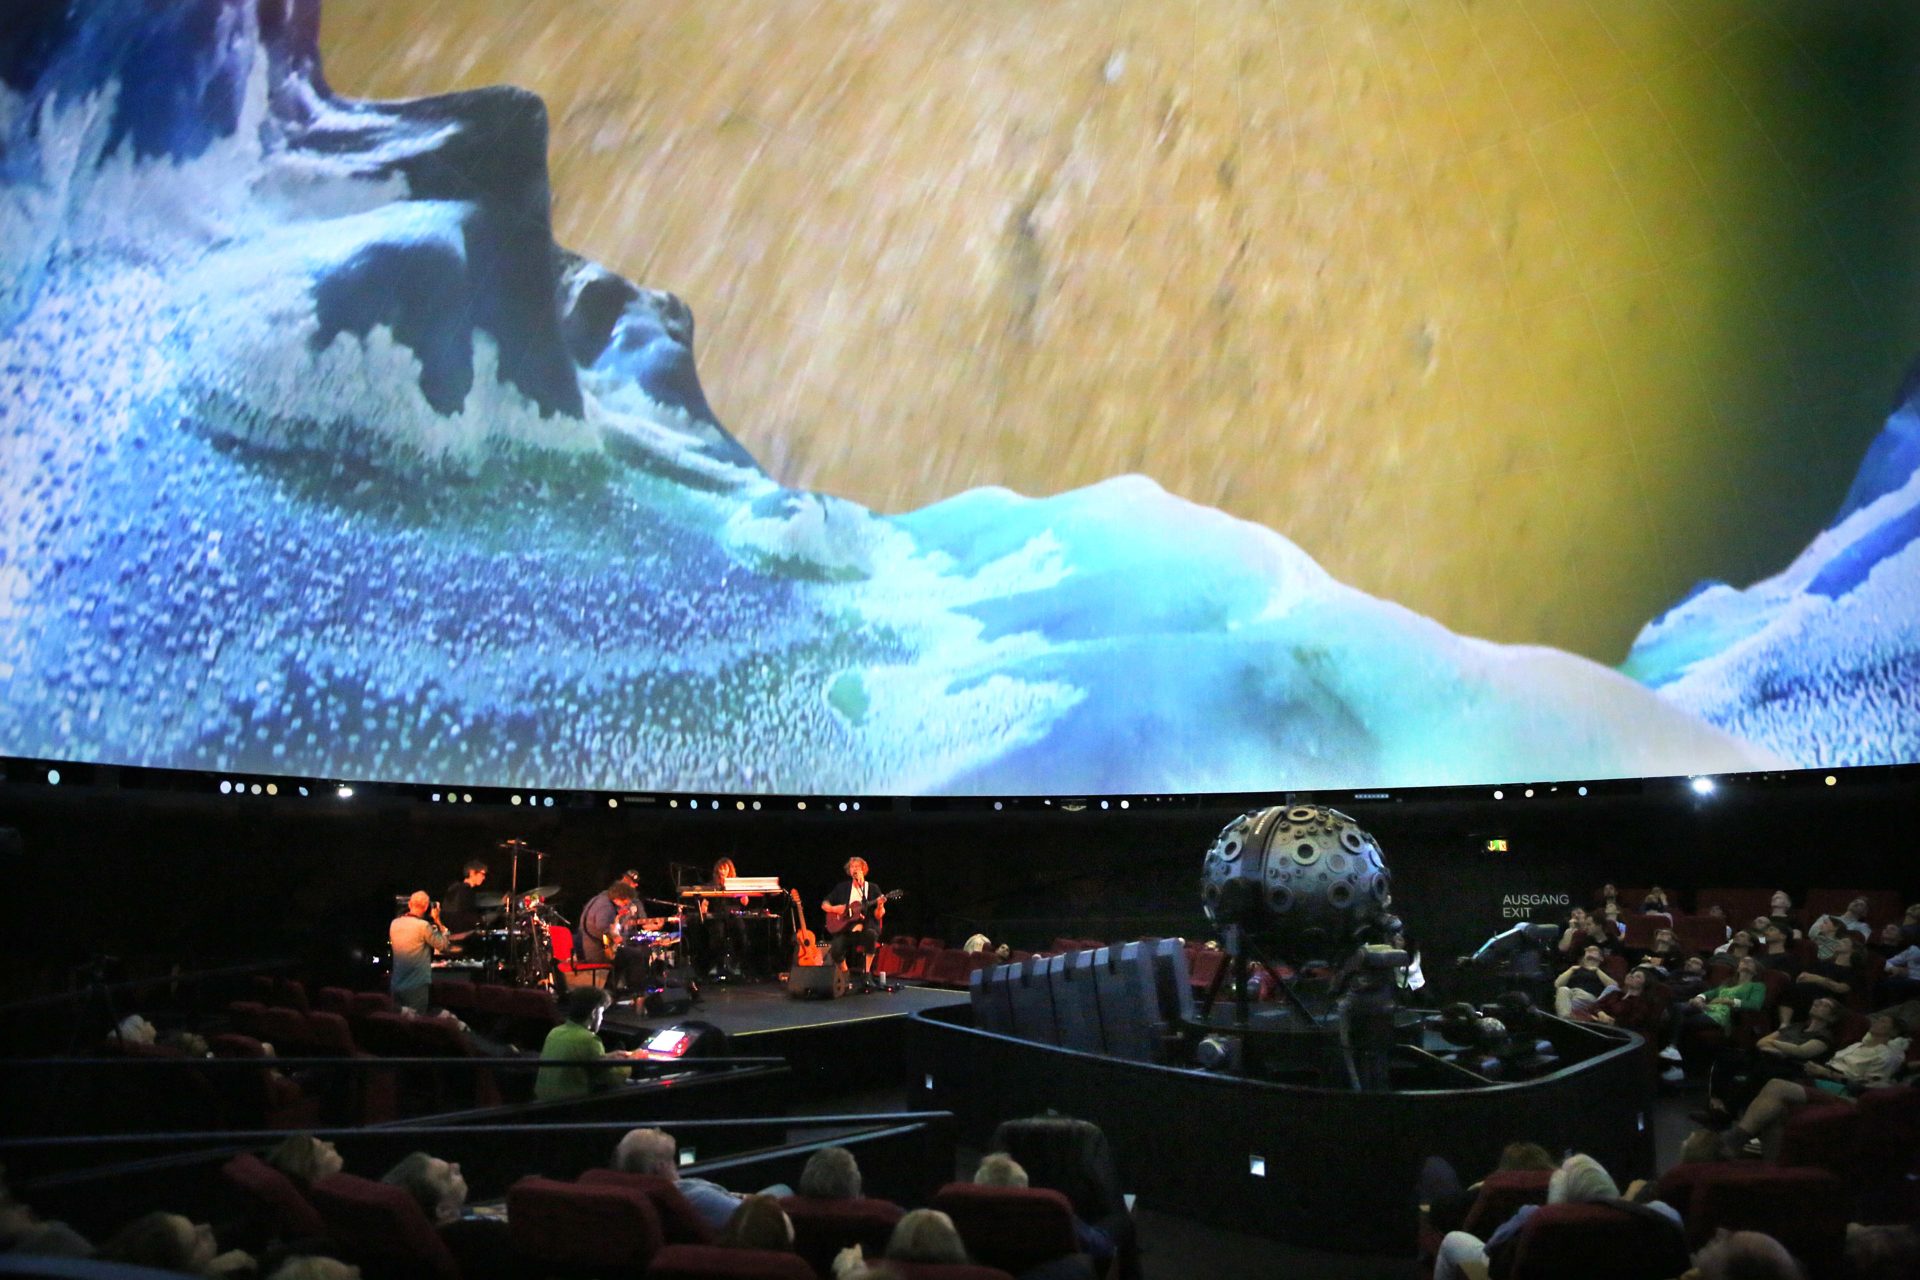 Konzert Richard Reed Parry 
Planetarium Hamburg
Berliner Festspiele